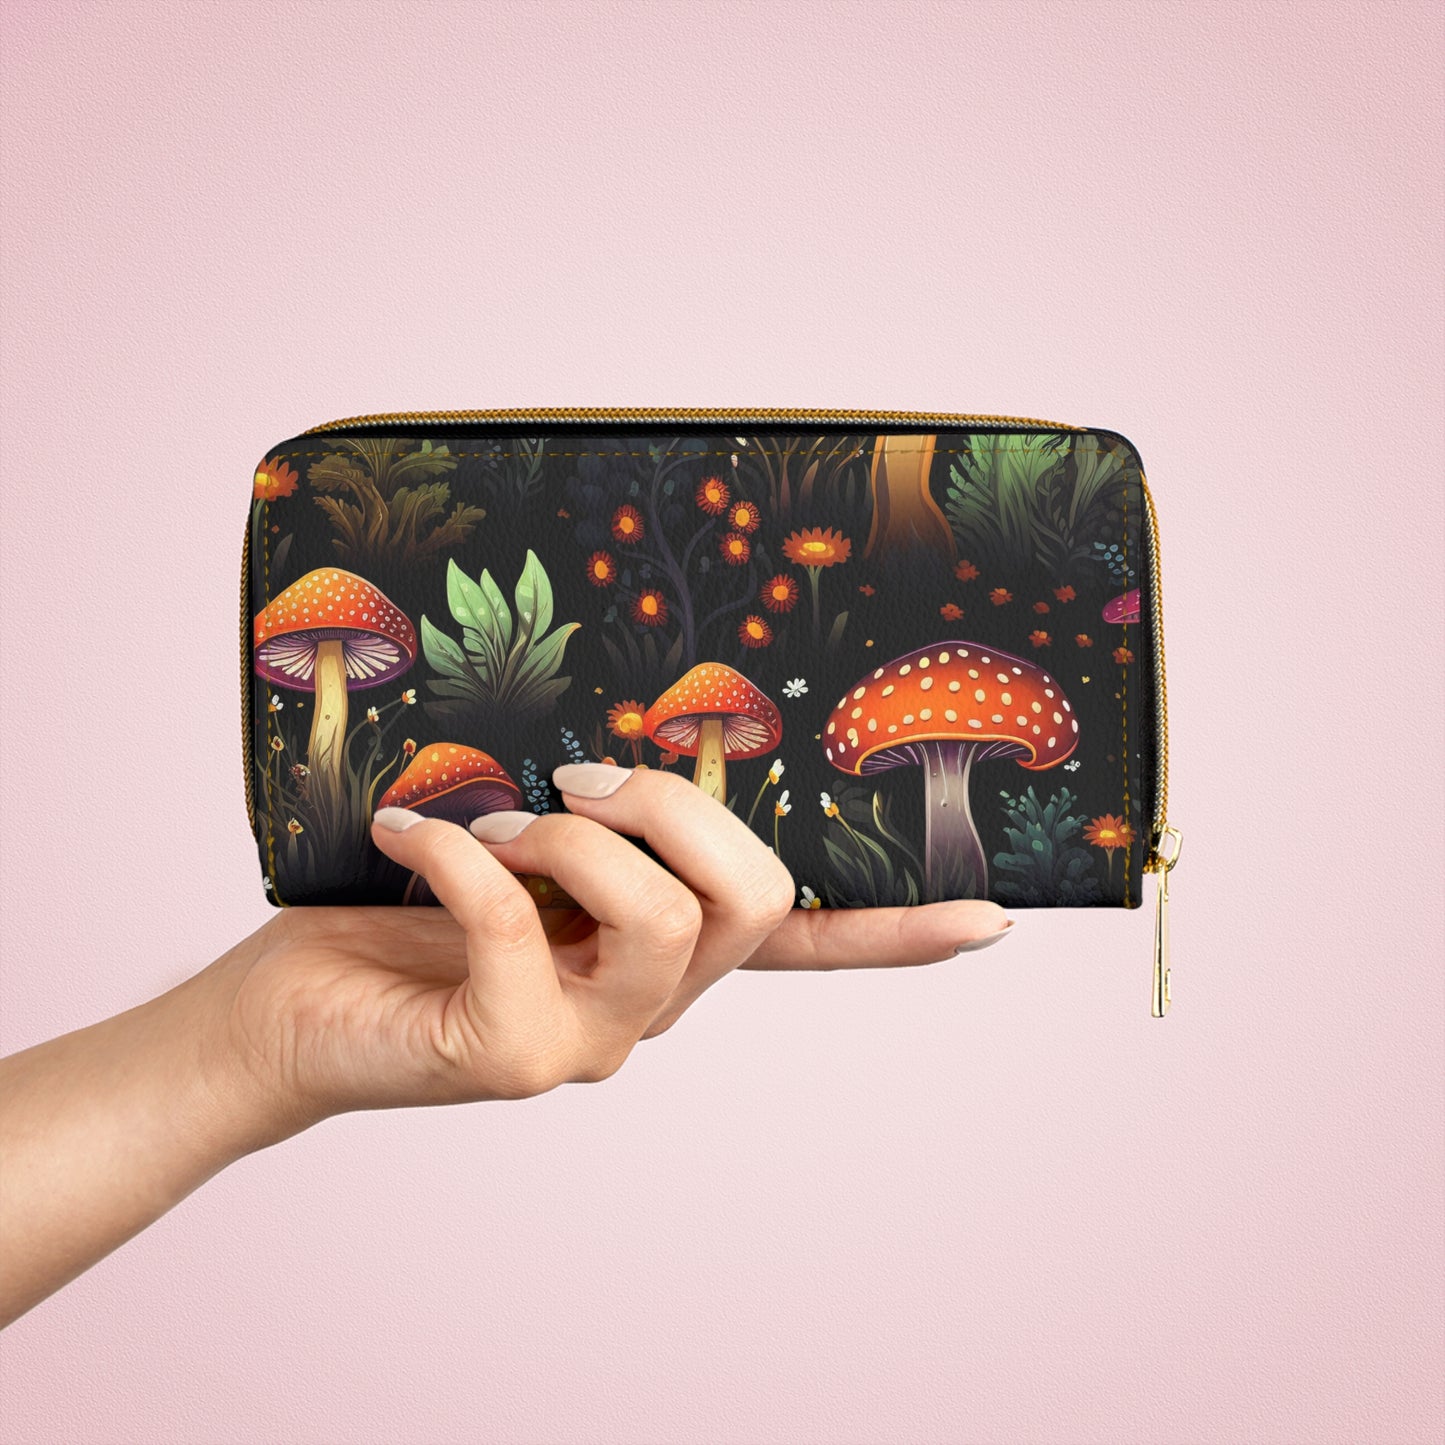 Mushroom Zipper Wallet | Dark Forest, Witchy, Witch Wallet Design